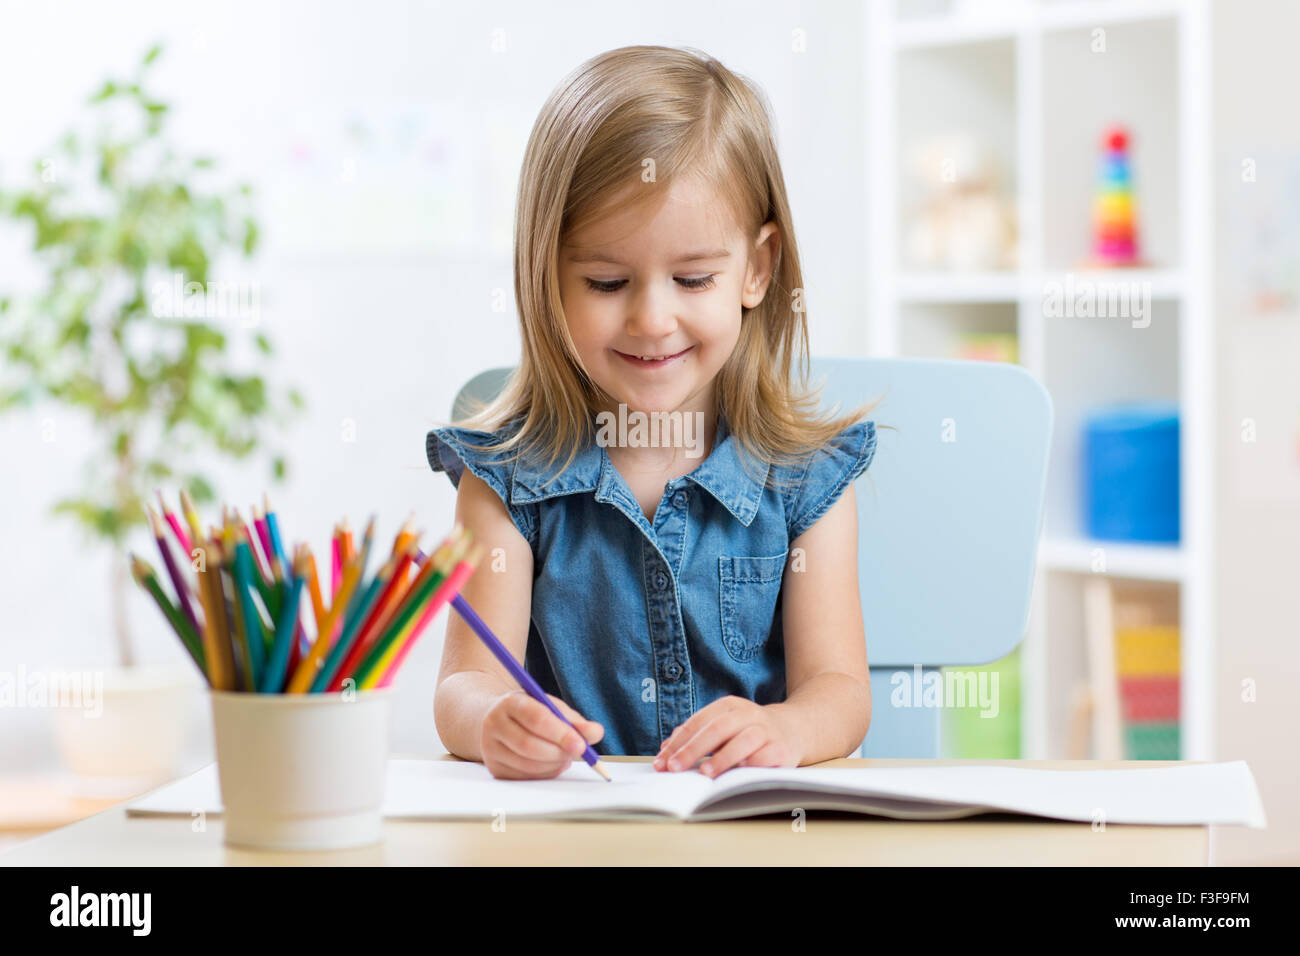 Retrato de muchacha encantadora de dibujo con lápices de colores Foto de stock